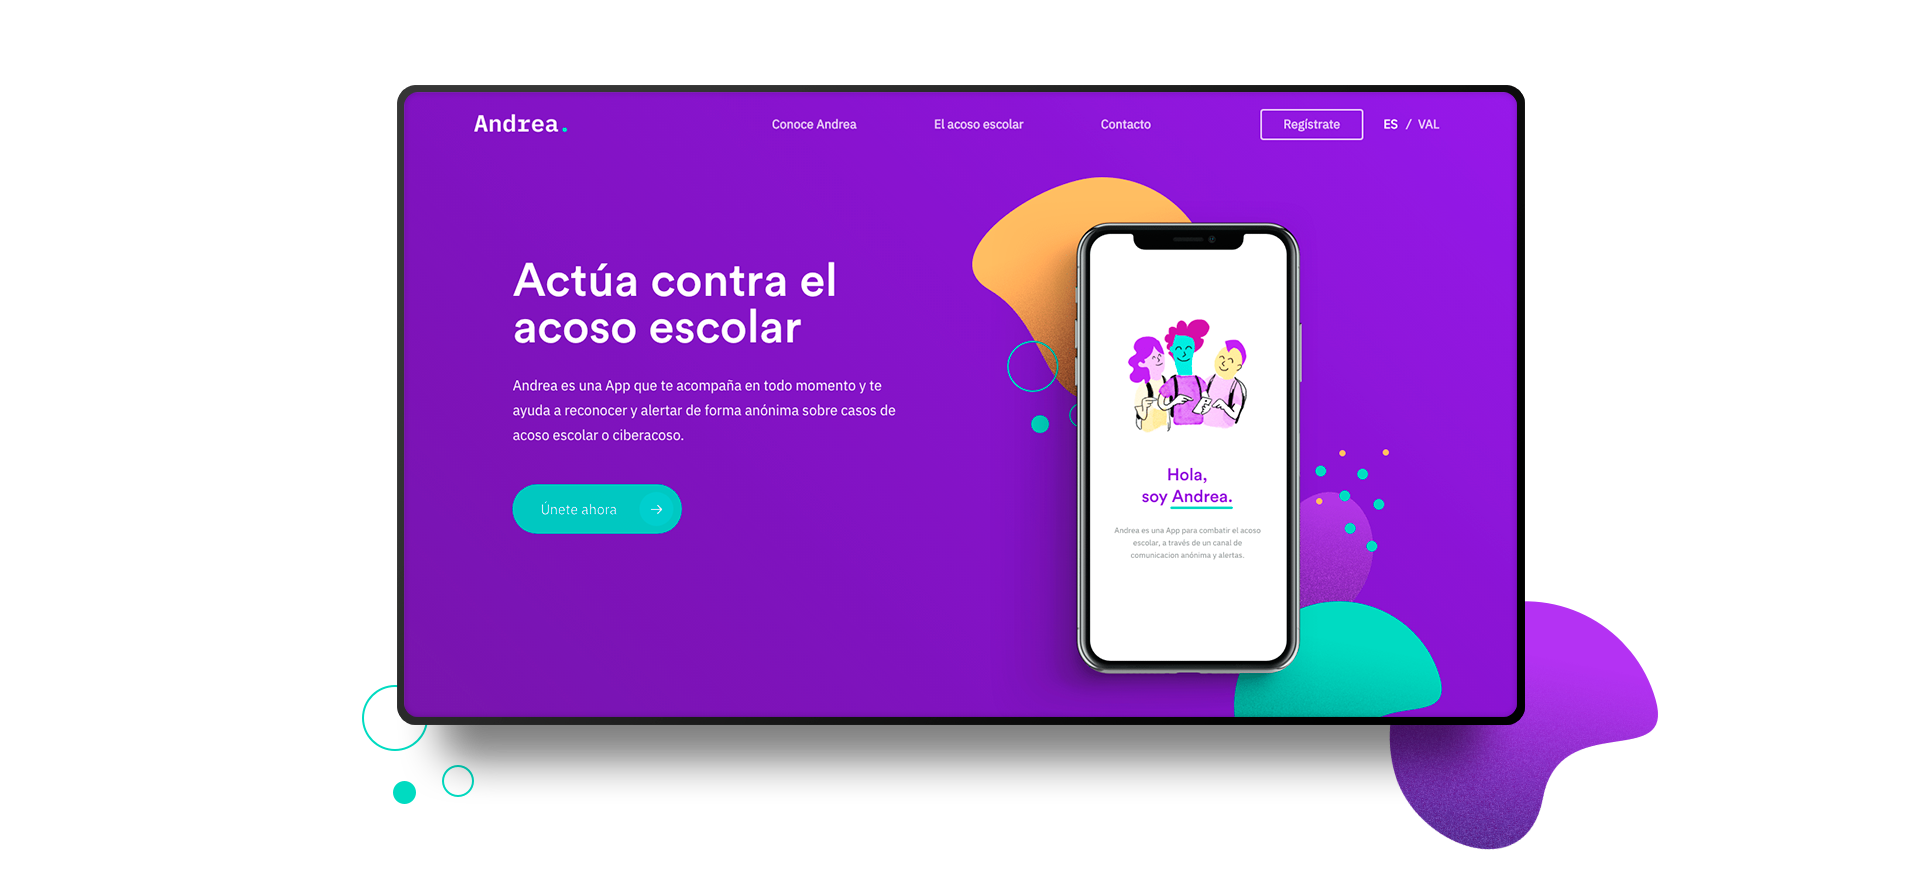 Andrea, la App para combatir el acoso escolar se pone en marcha en Valencia